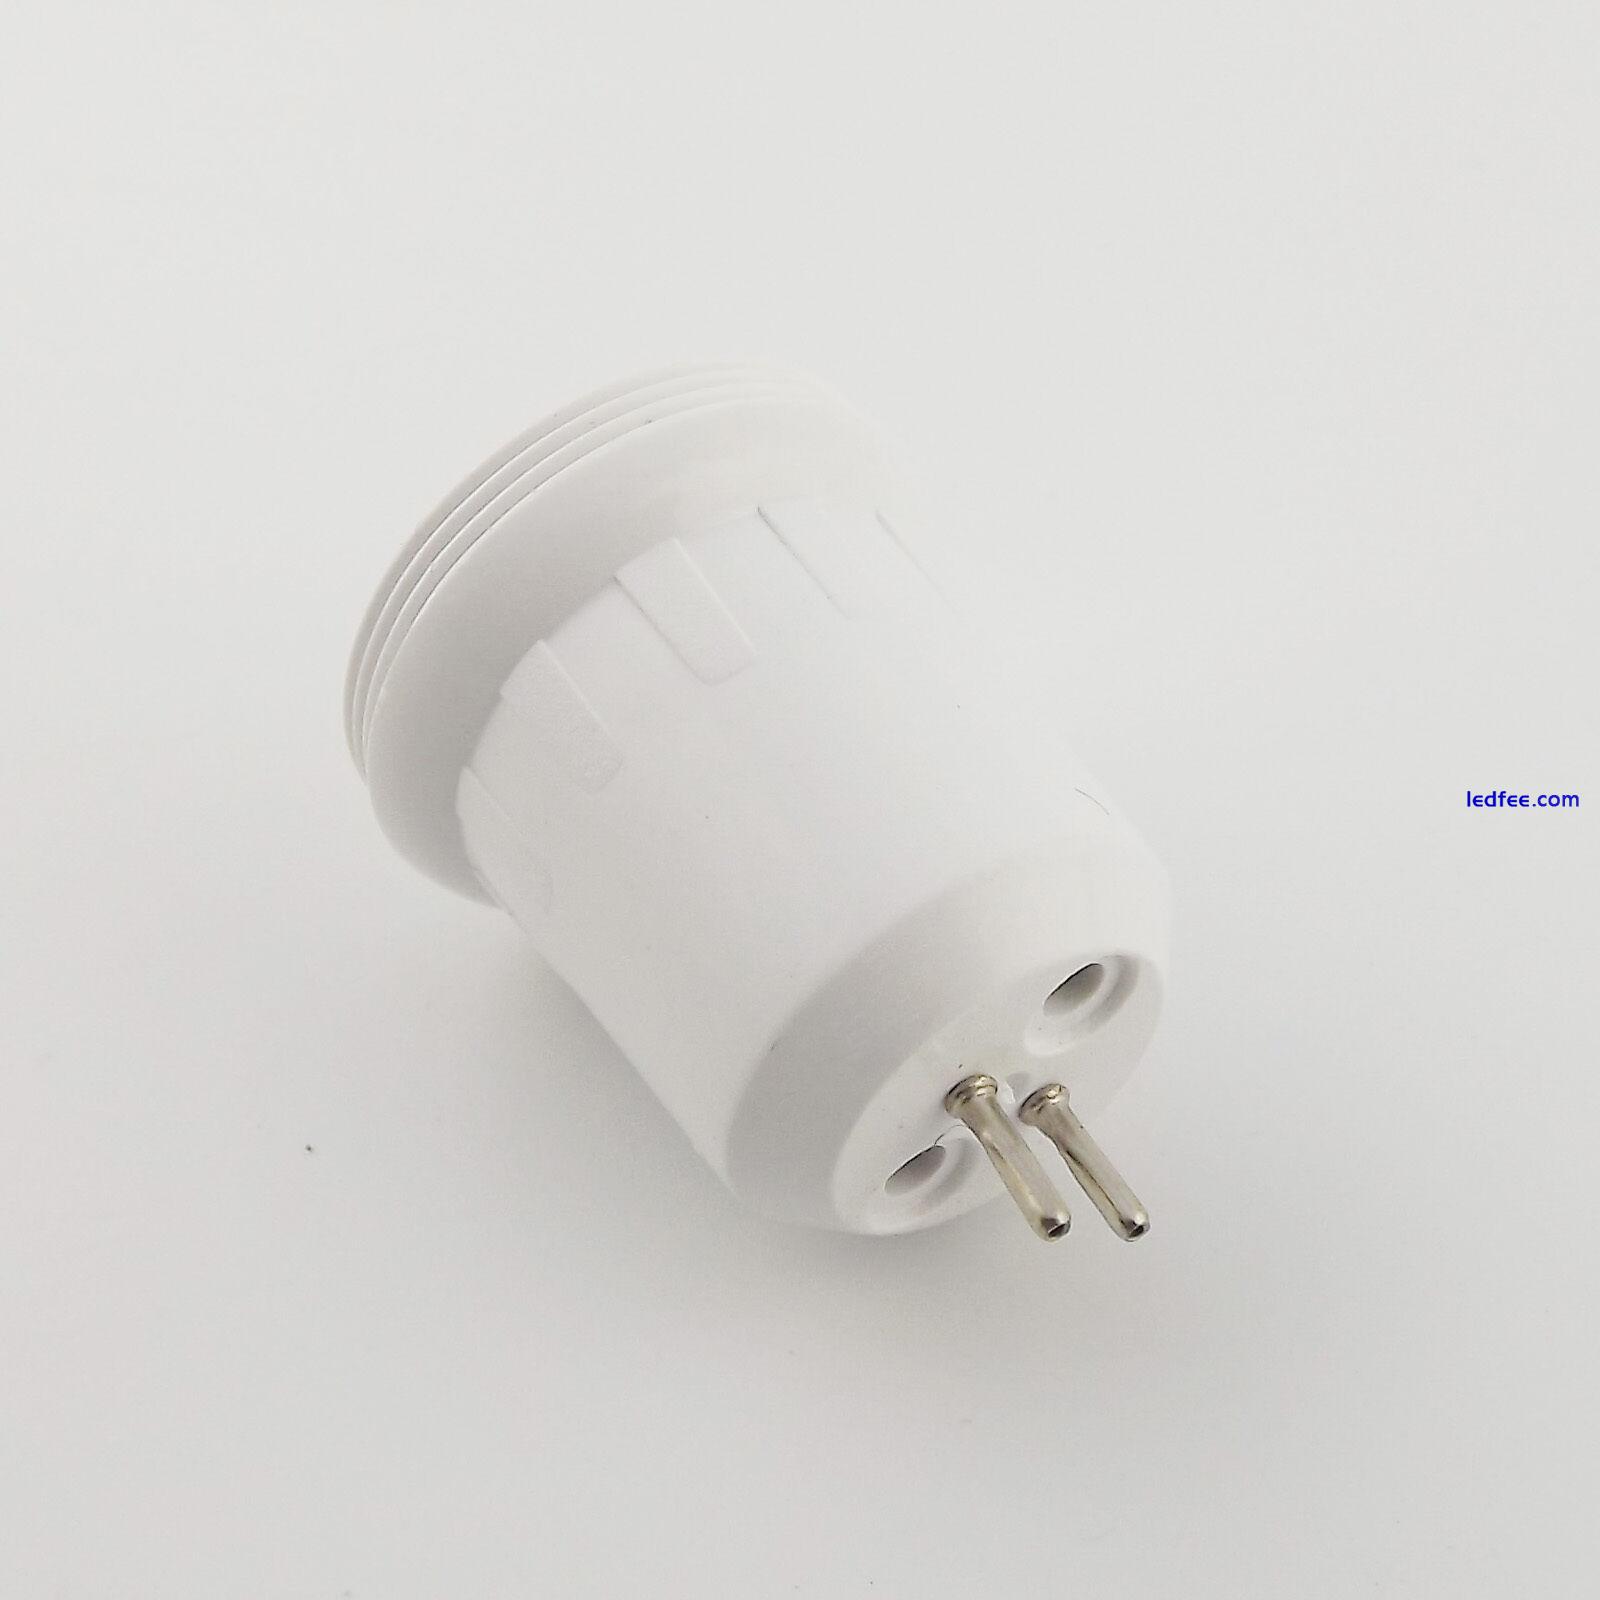 MR16 to E10 Screw Thread LED Halogen CFL Light Bulb Lamp Socket Convert Holder 0 